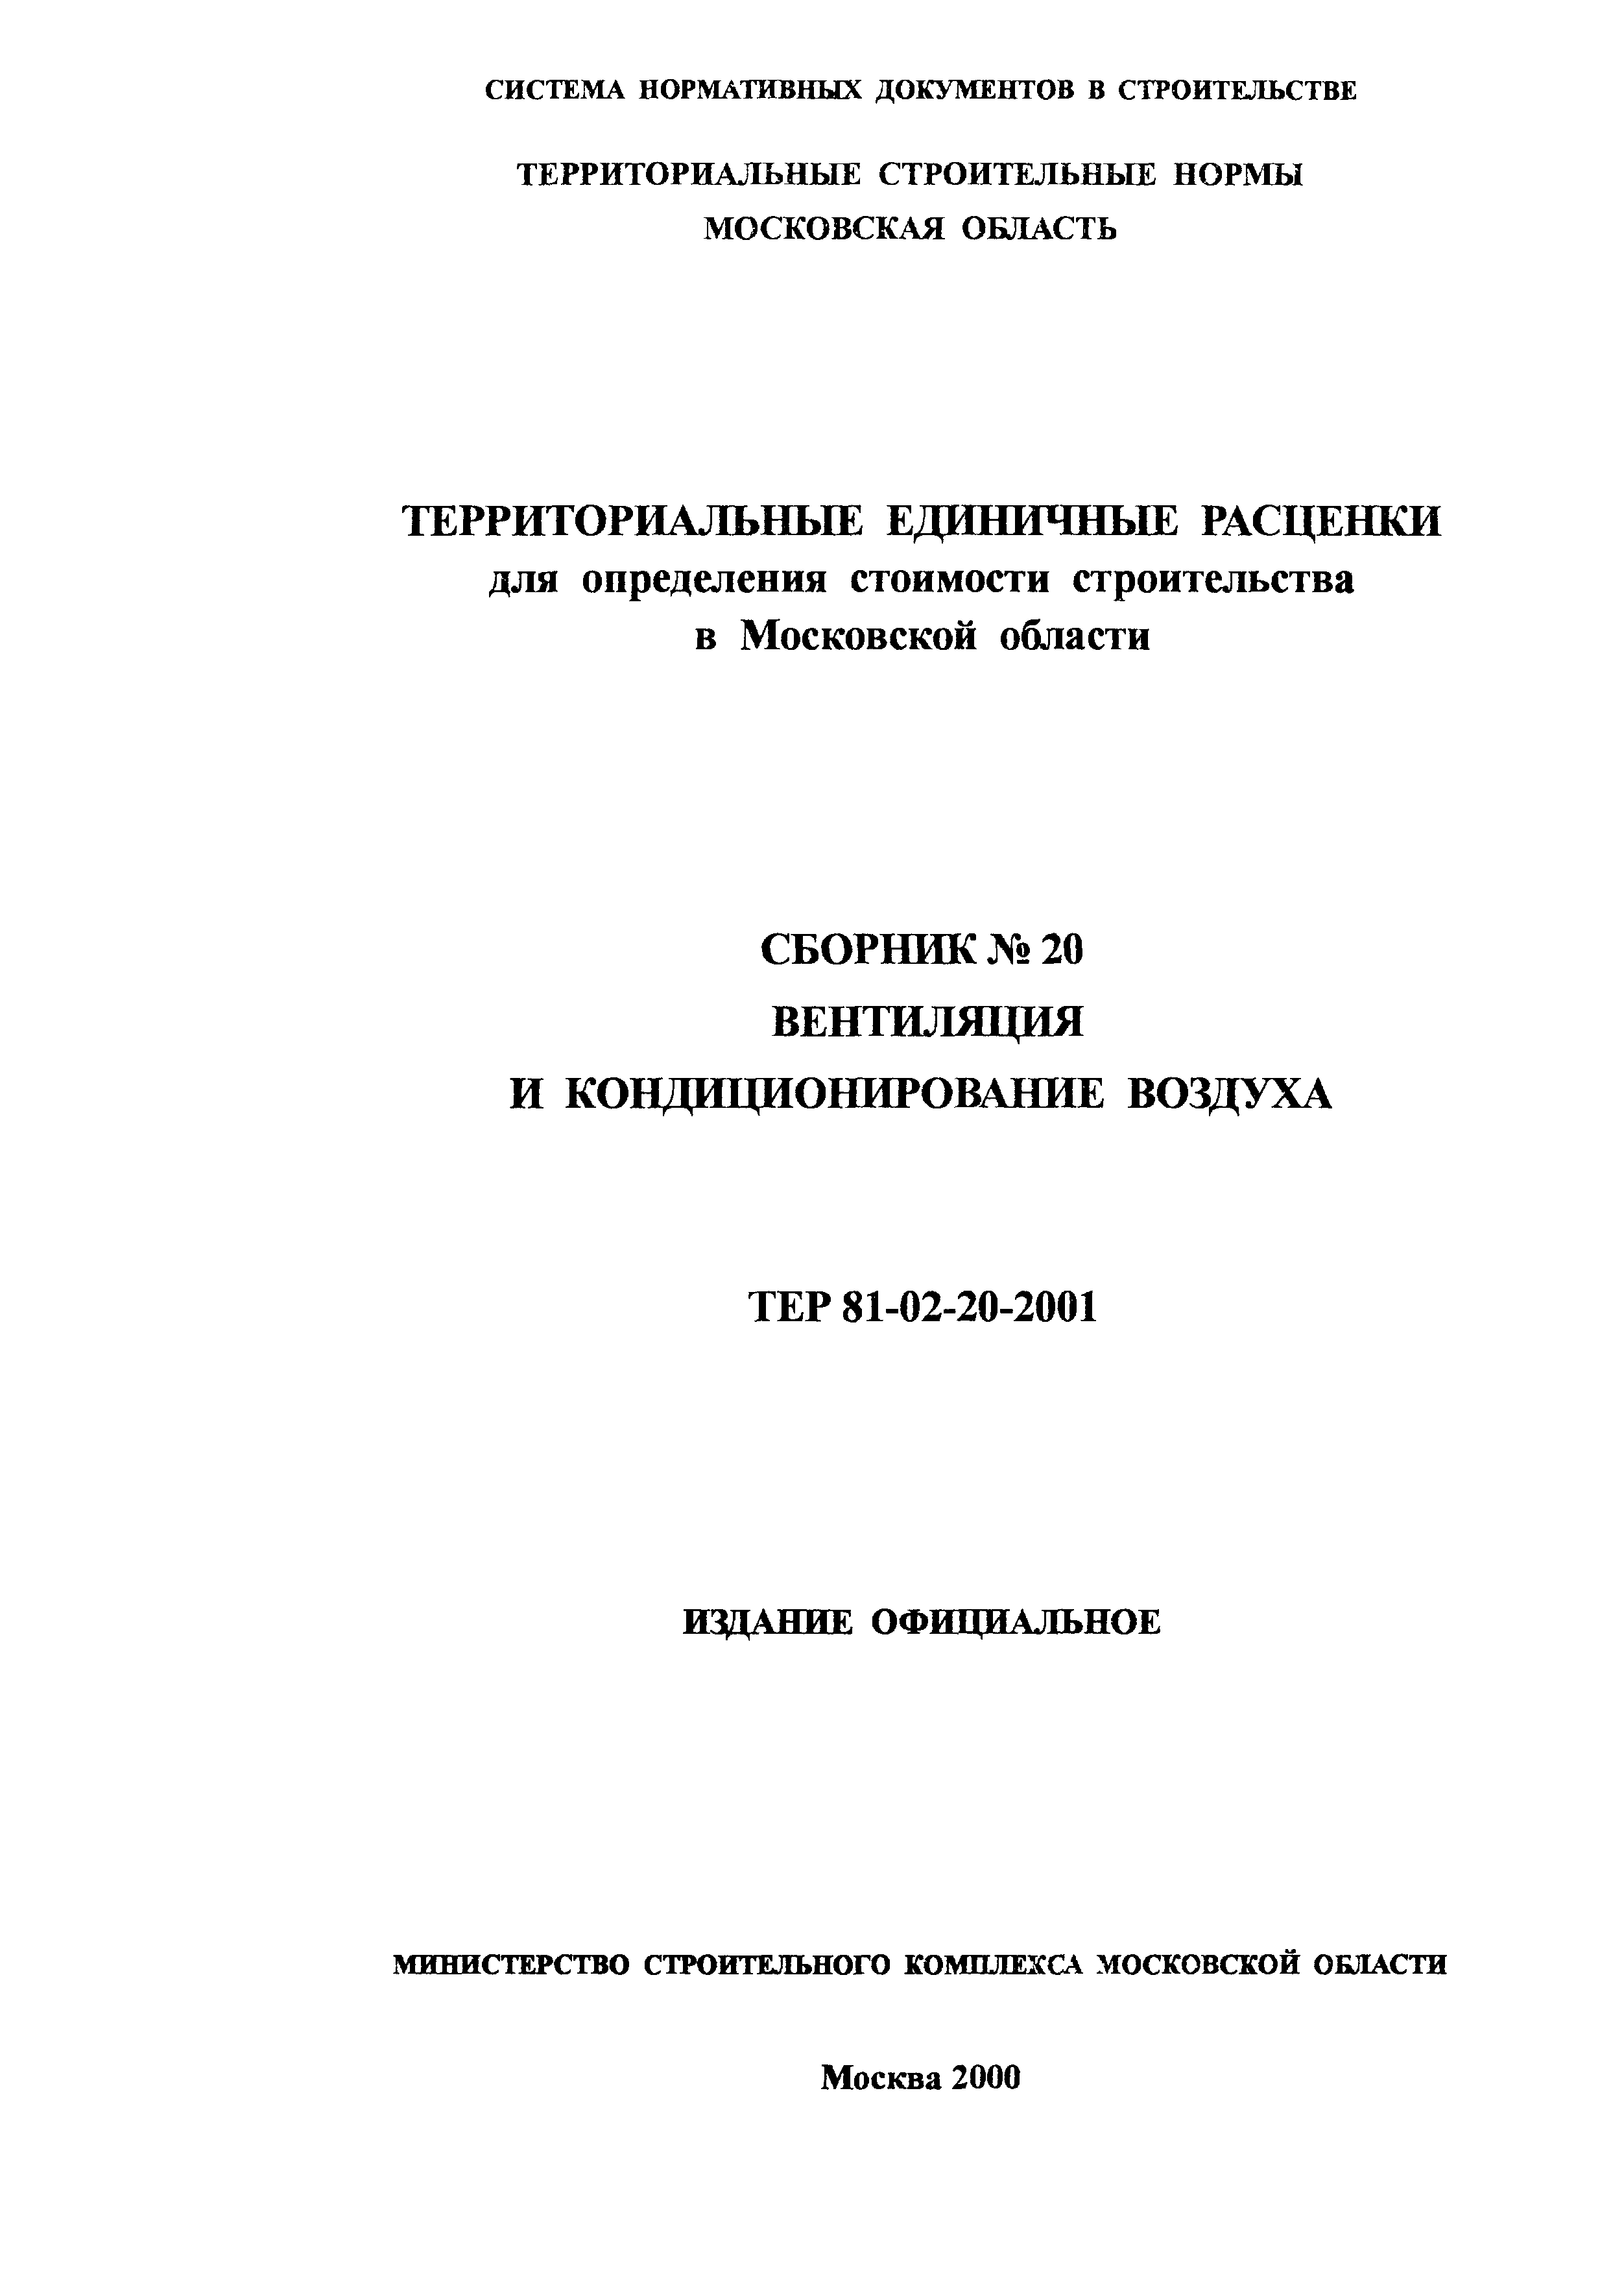 ТЕР 2001-20 Московской области